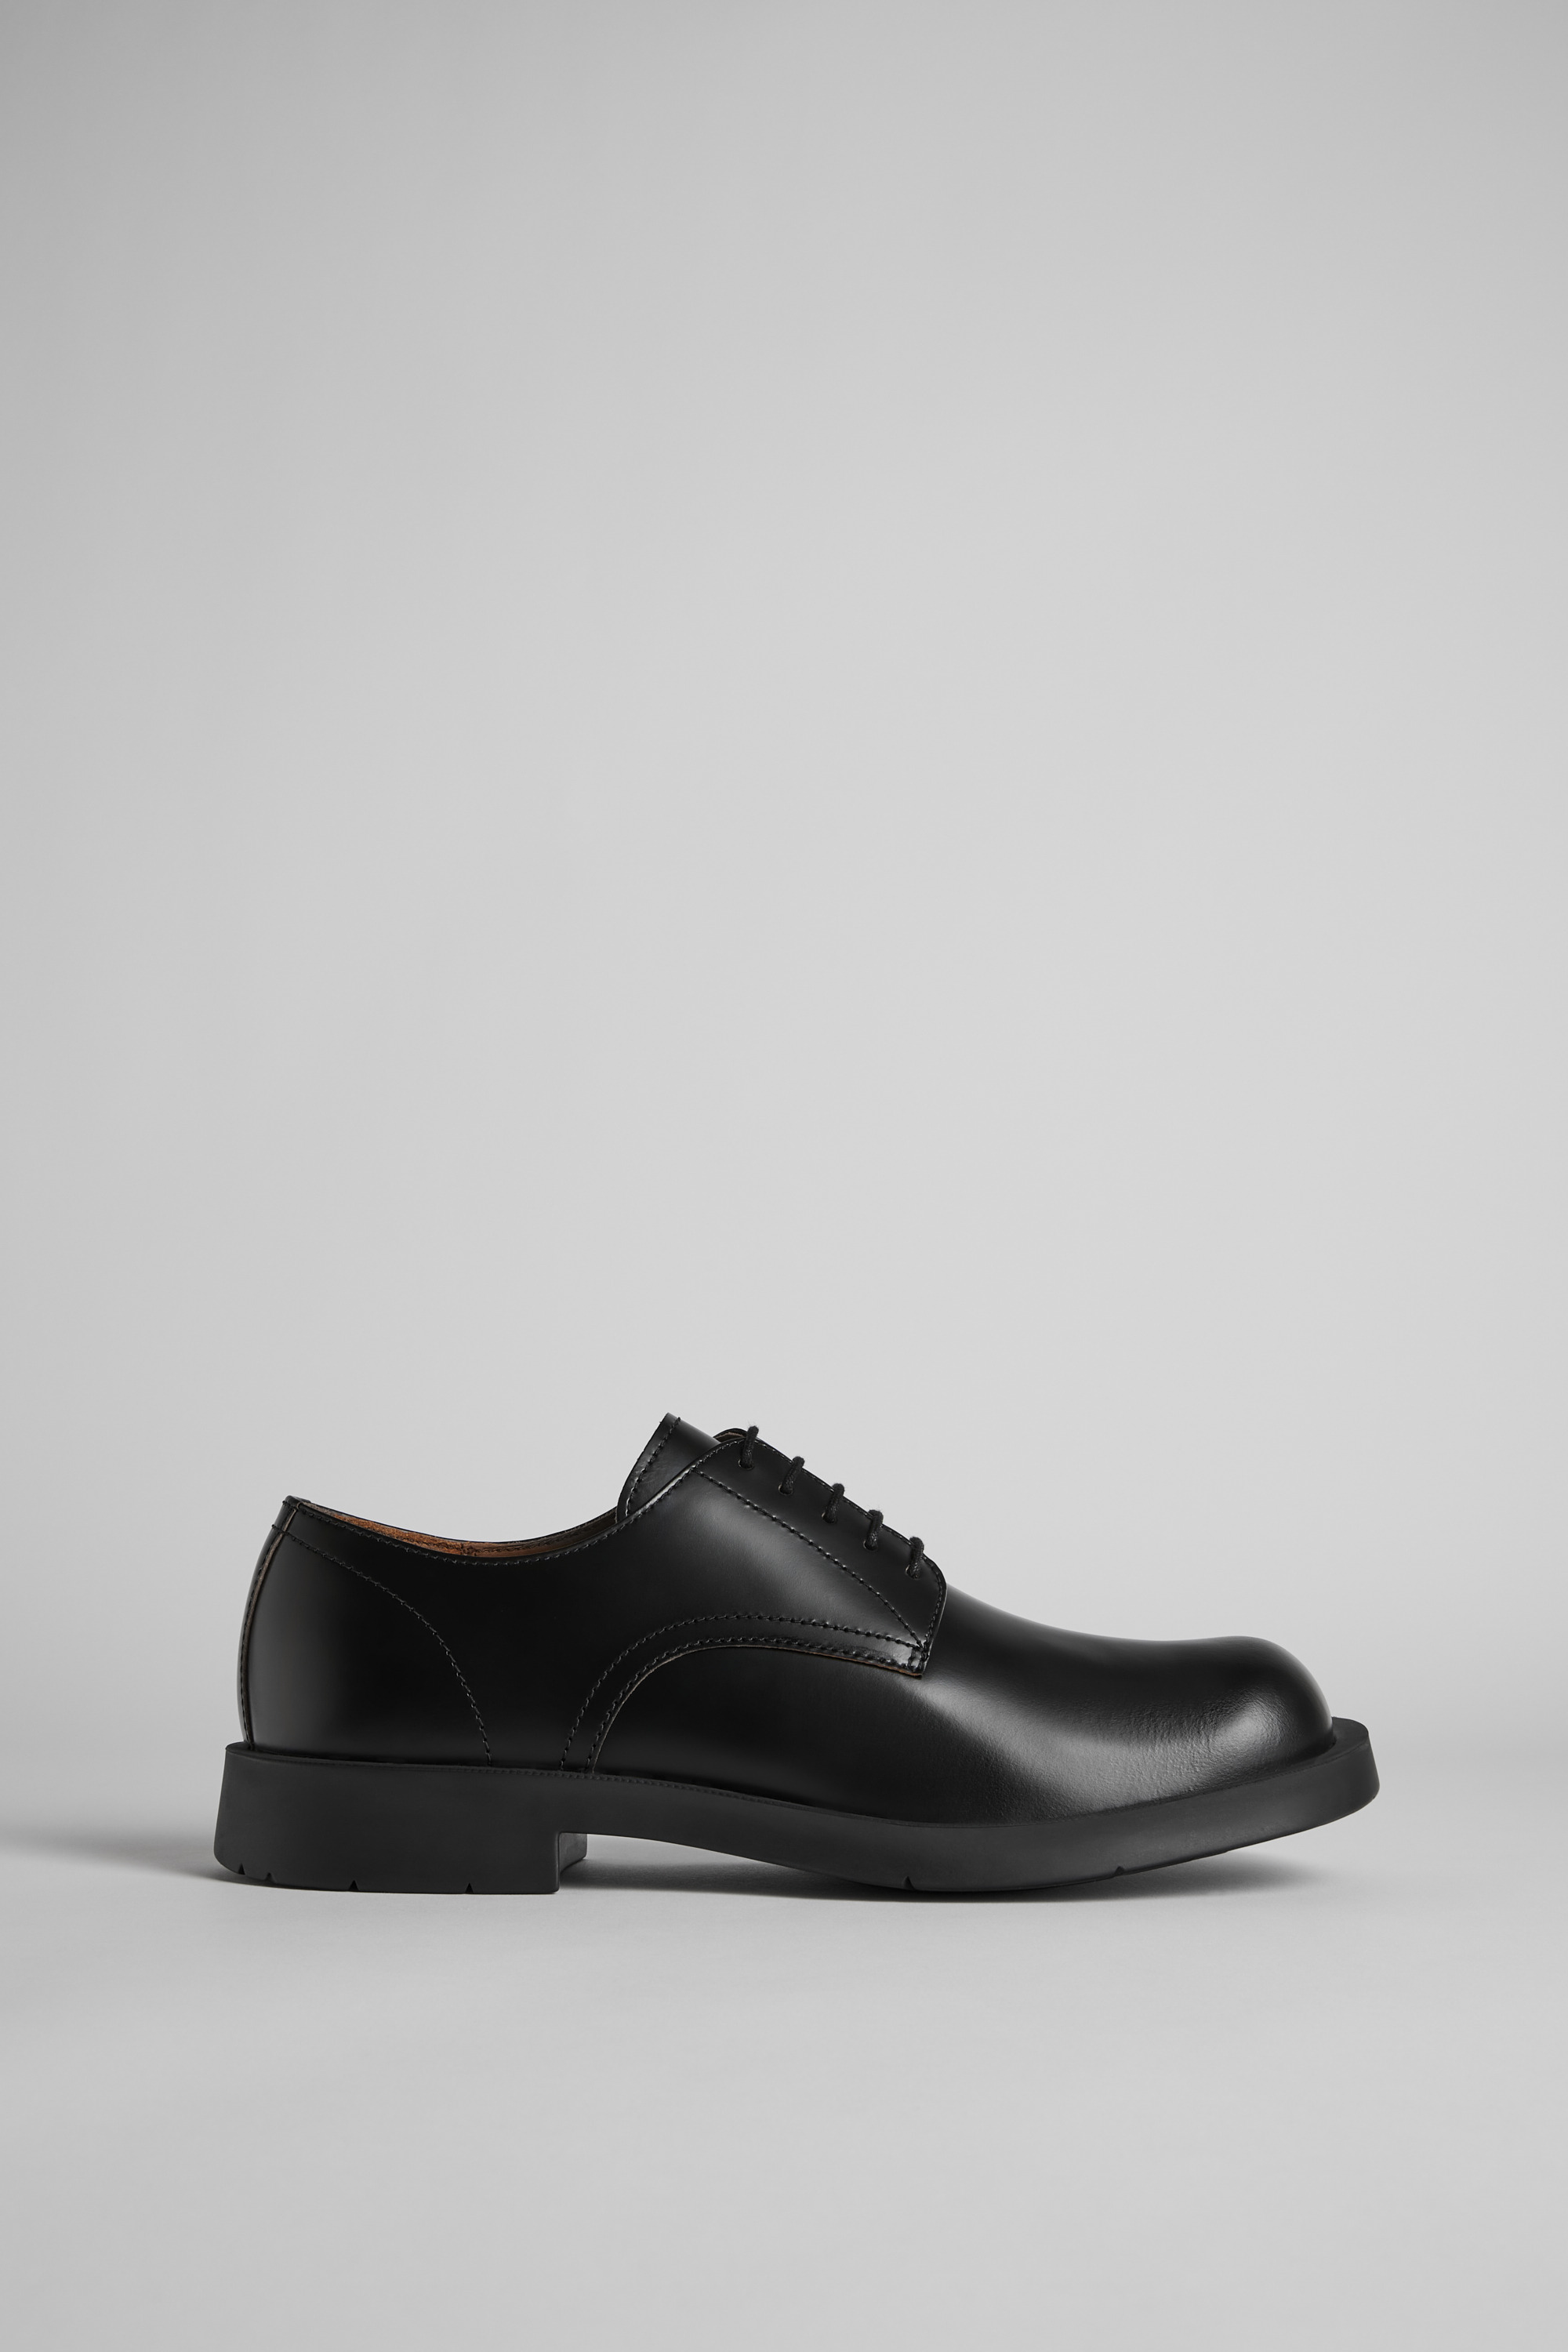 Voorvoegsel staart boom Neuman Black Formal Shoes for Men - Spring/Summer collection - Camper France